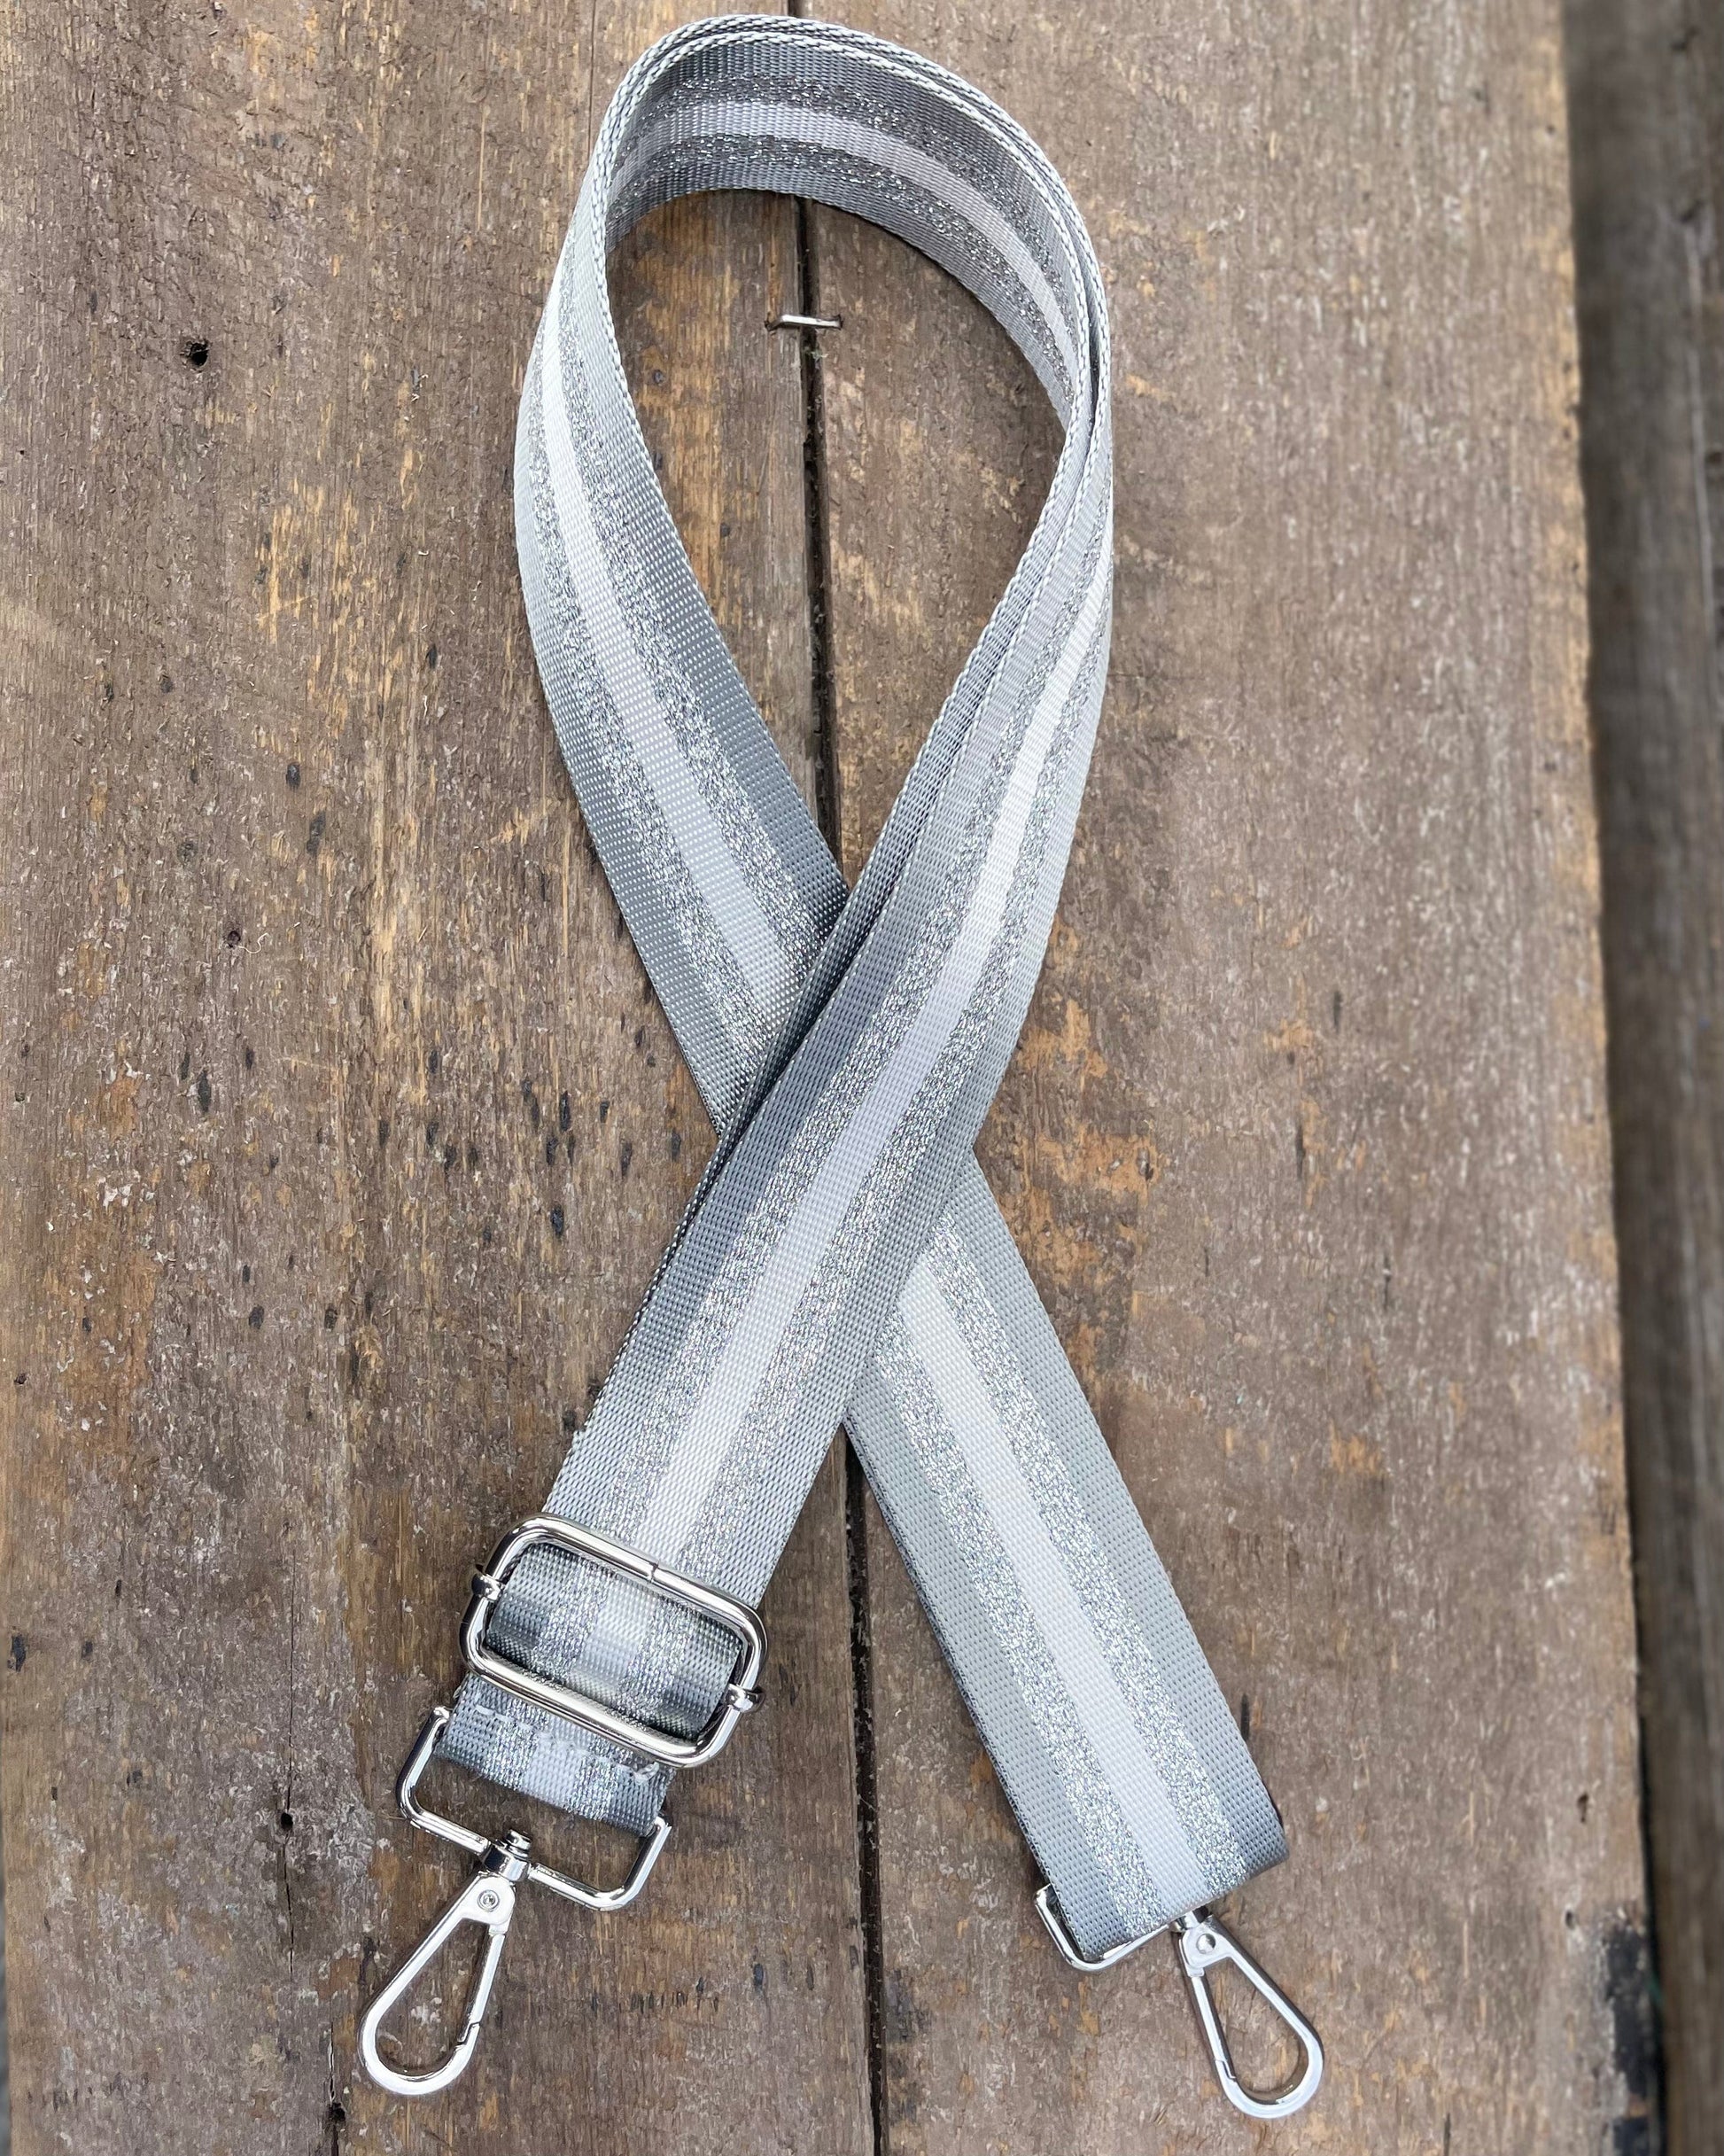 accessory Bag Strap - Silver And Silver Grey Stripe